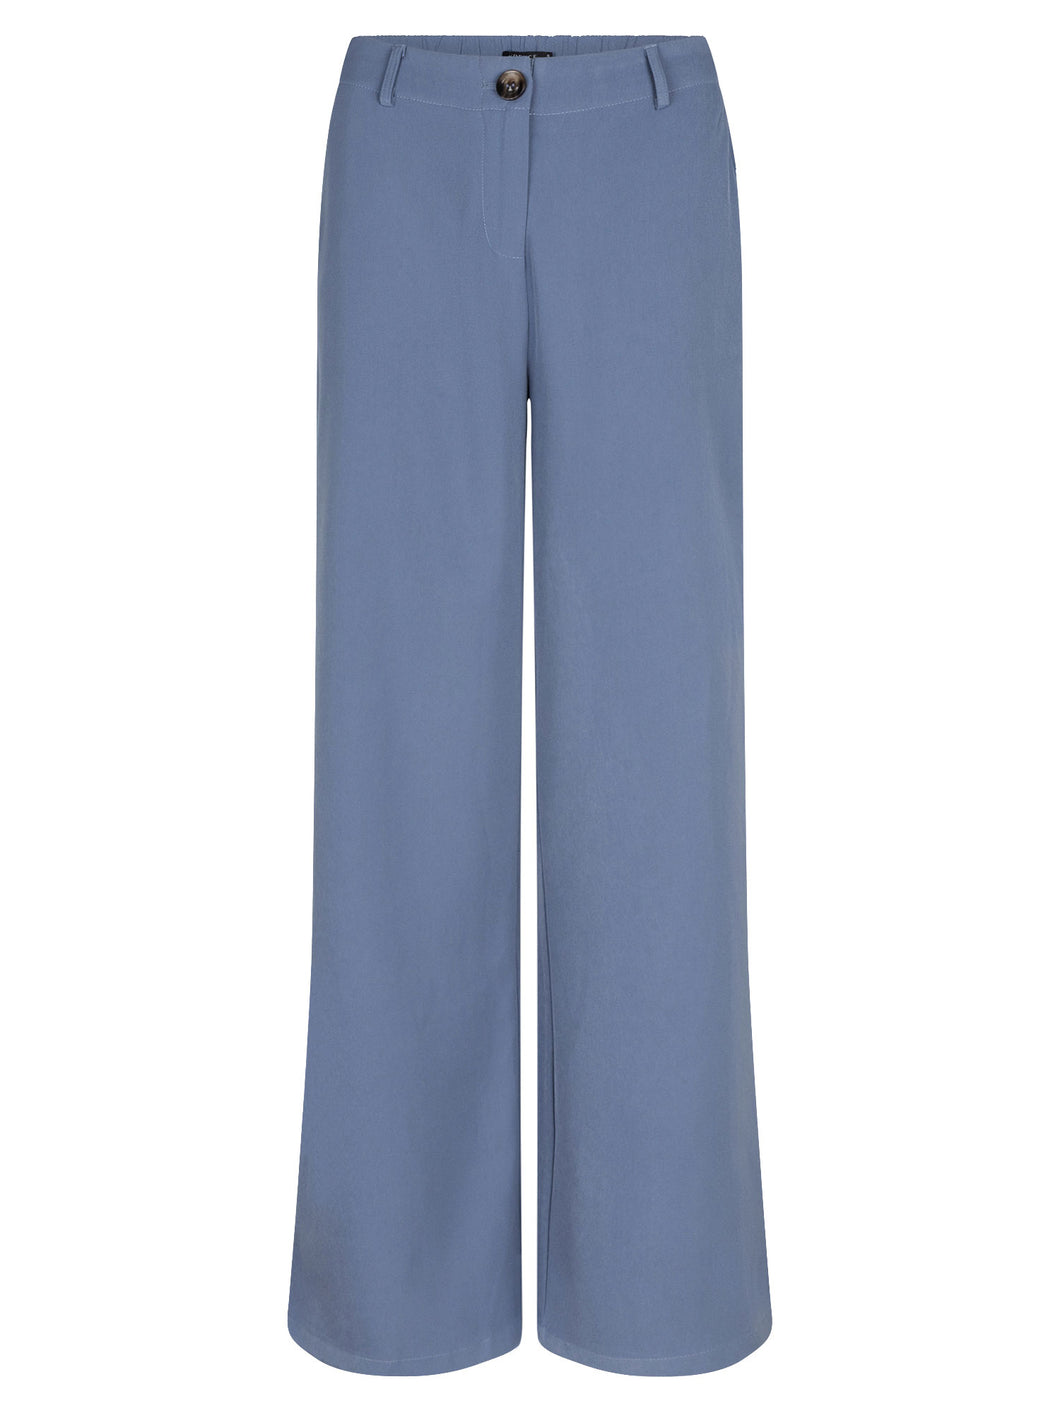 Pants Solange - Dusty Blue